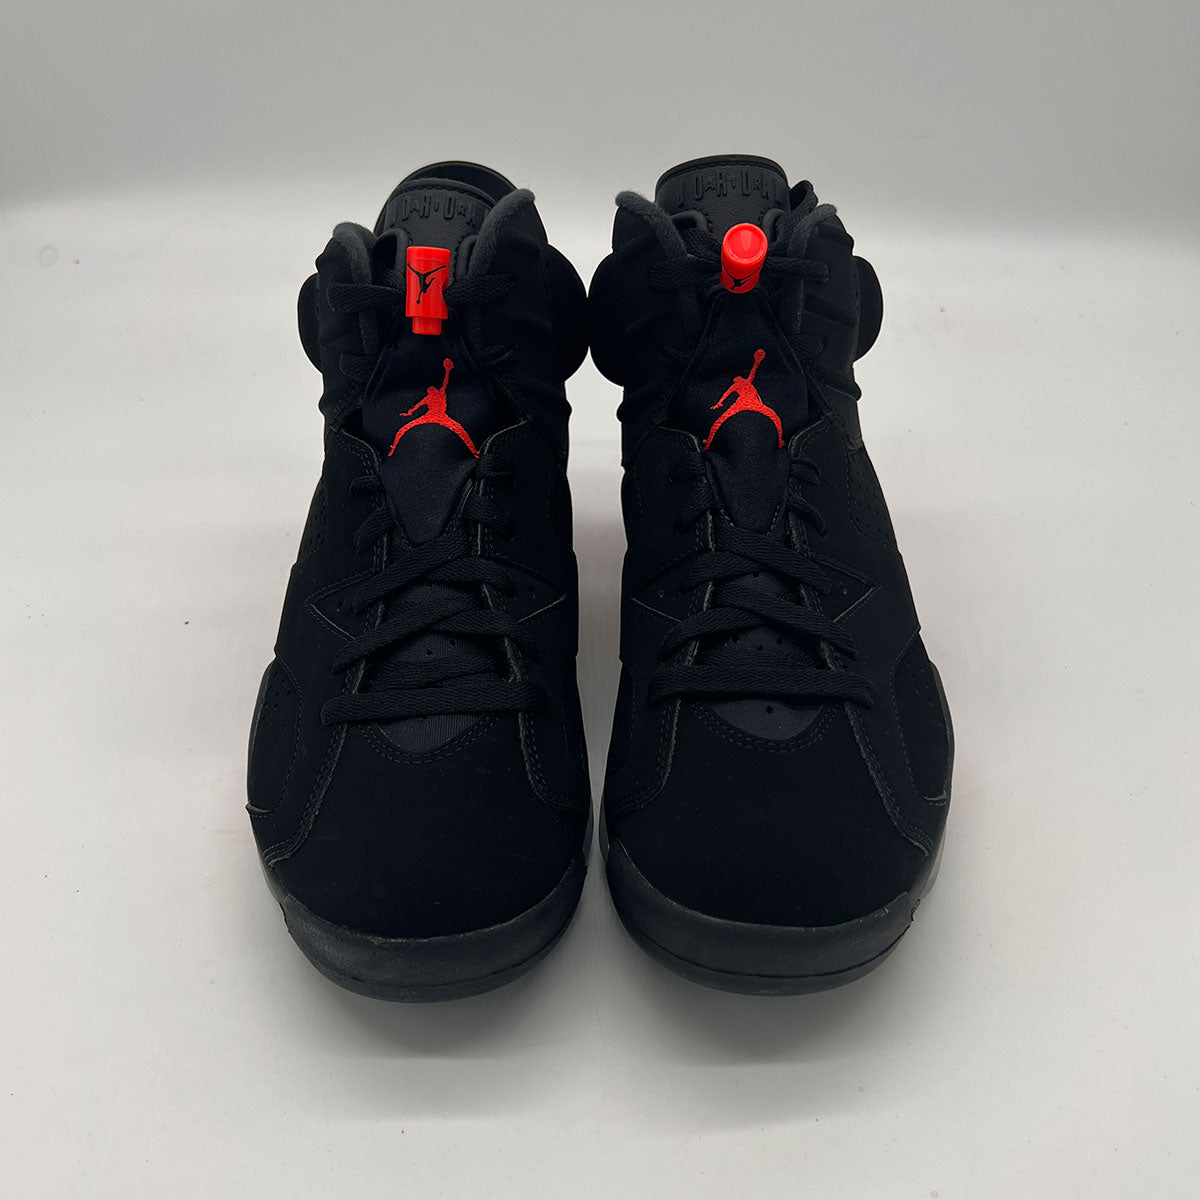 Air Jordan 6 Retro Black Infrared 2019 Release NWOB